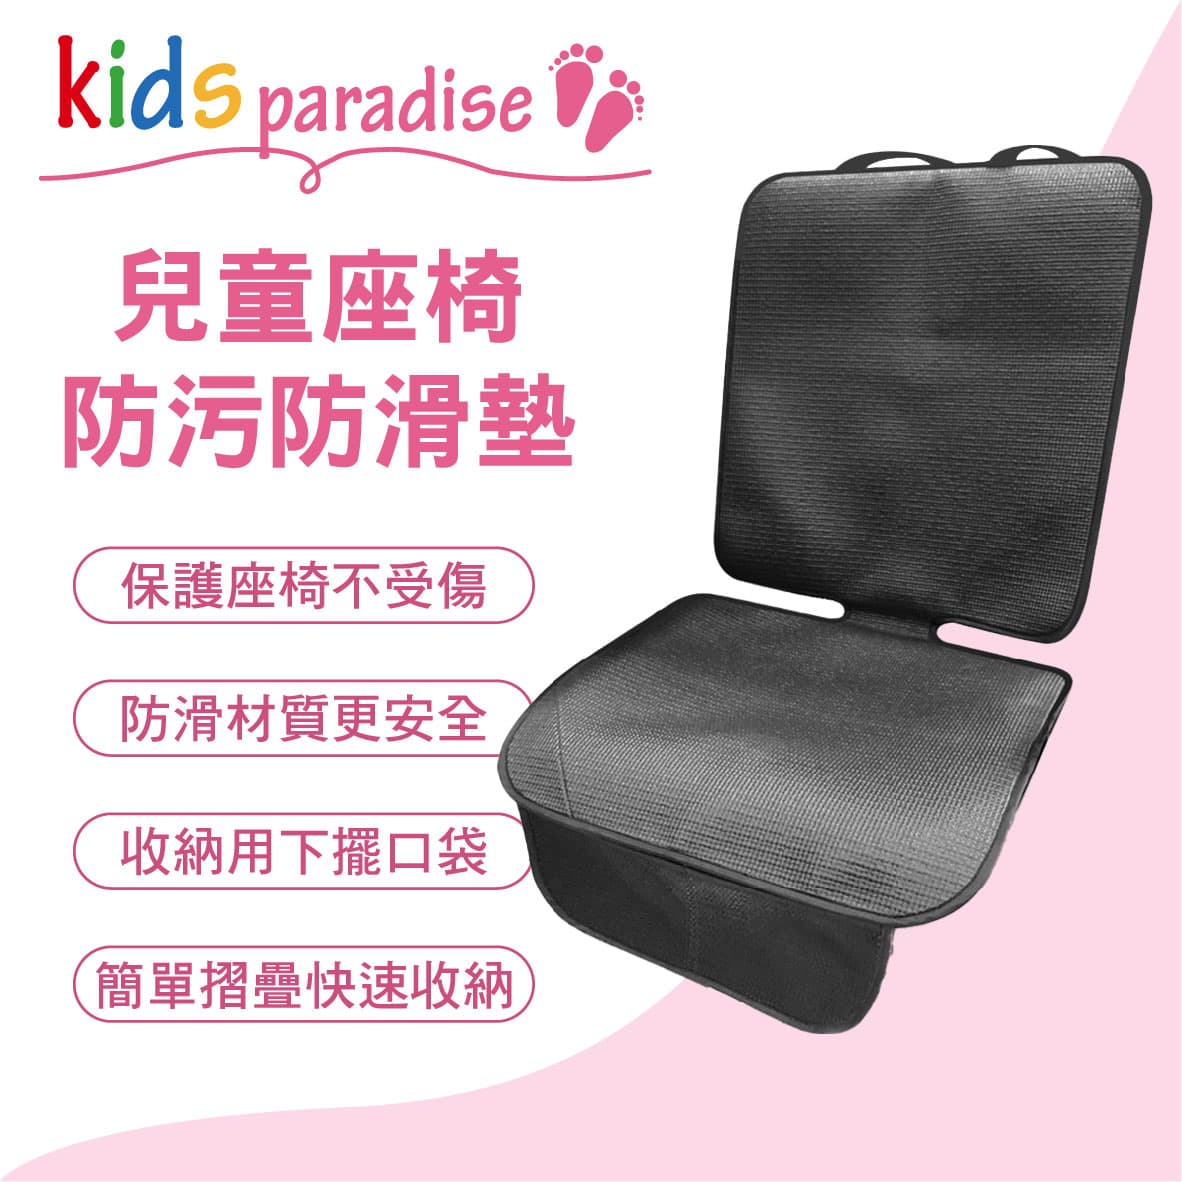 真便宜 Kids paradise AI68005G 兒童座椅防污防滑墊